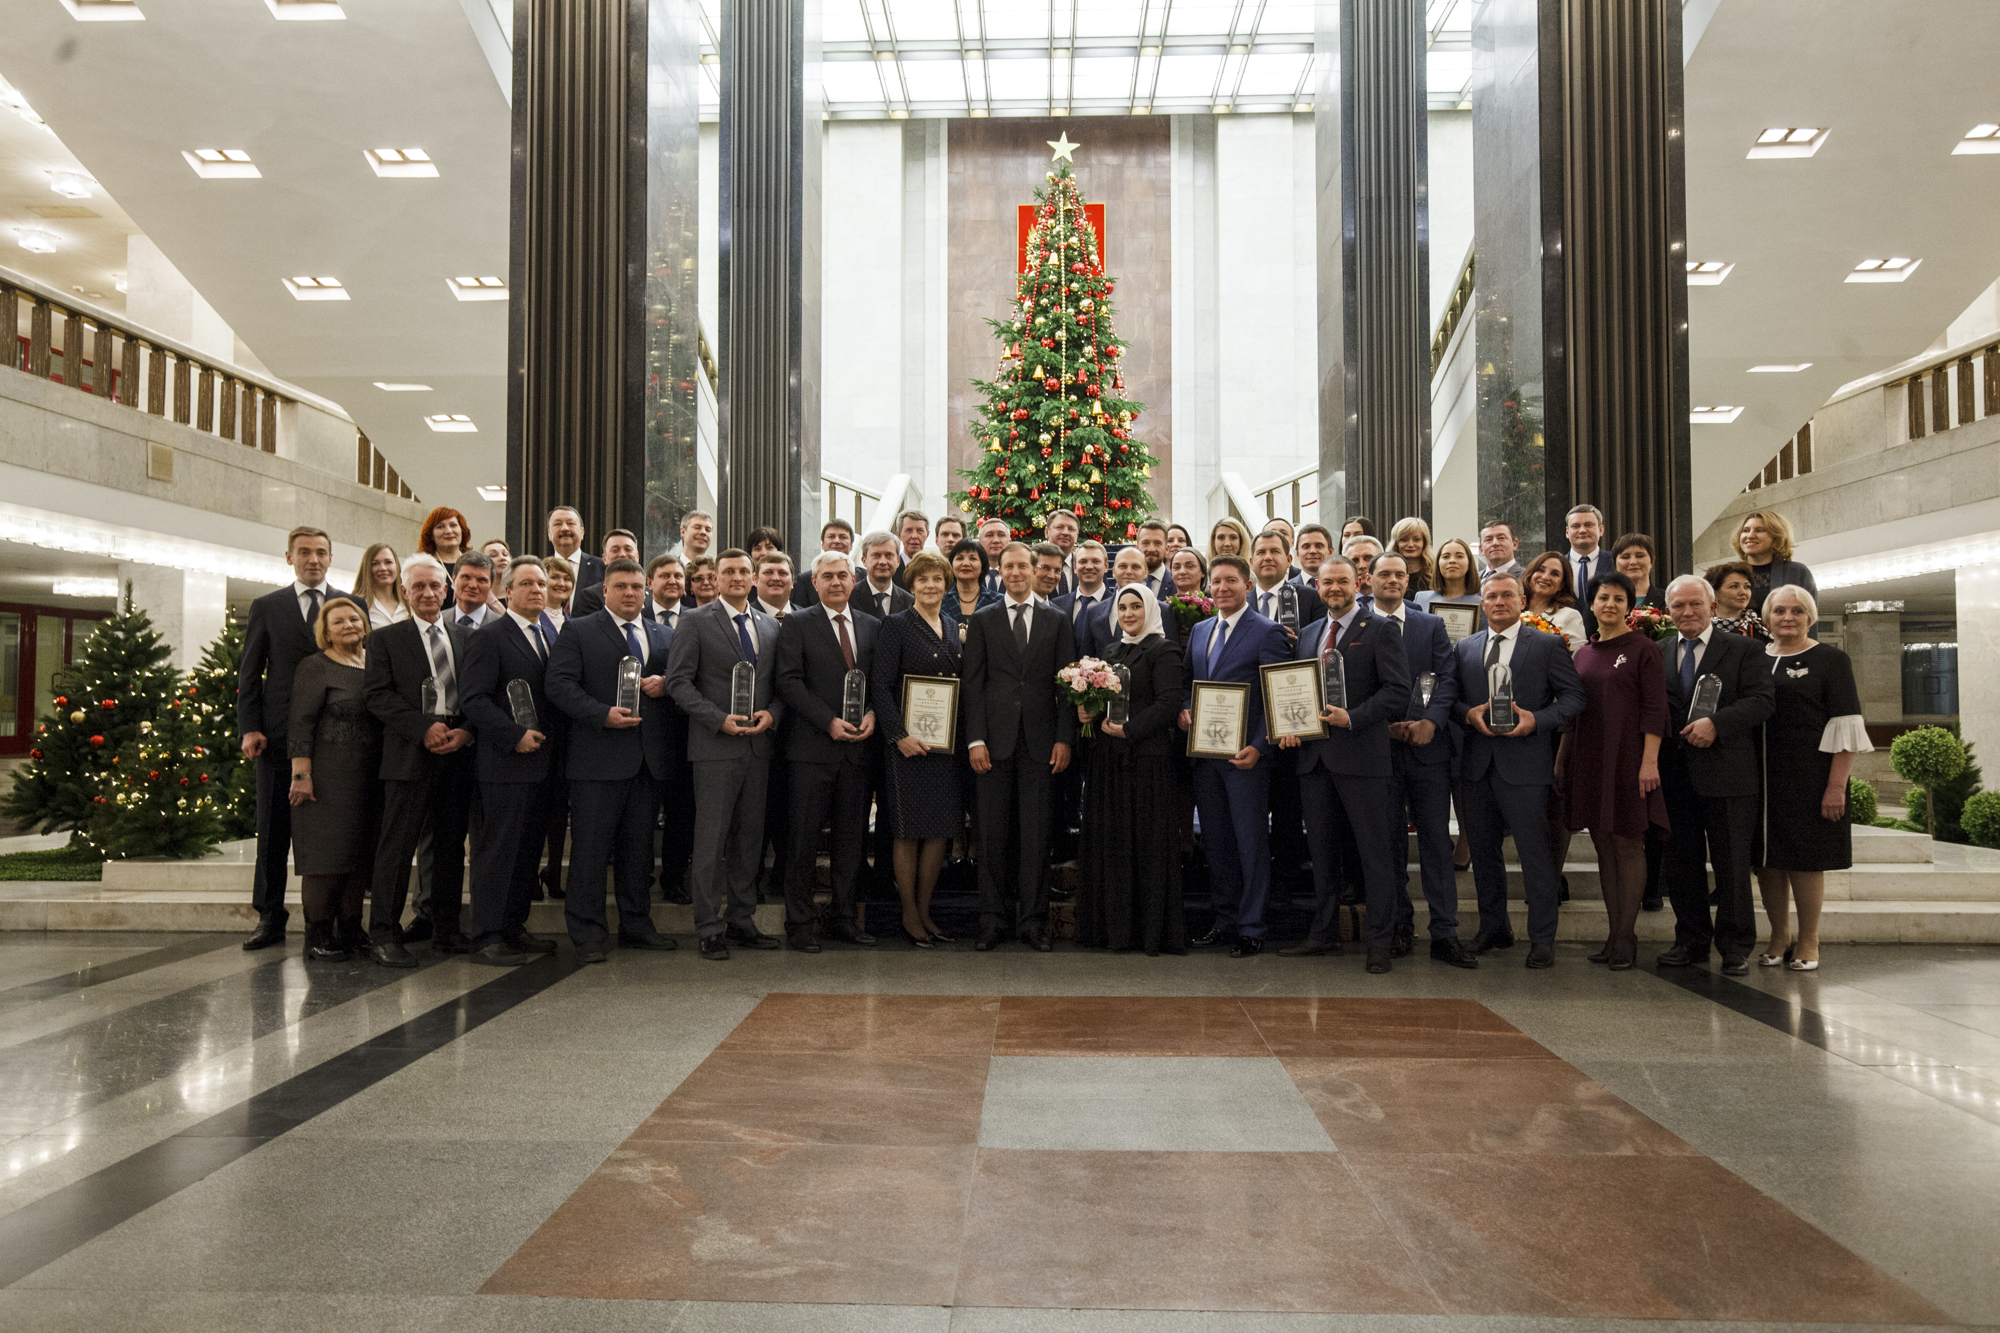 Реферат: Премия Правительства Российской Федерации в области качества